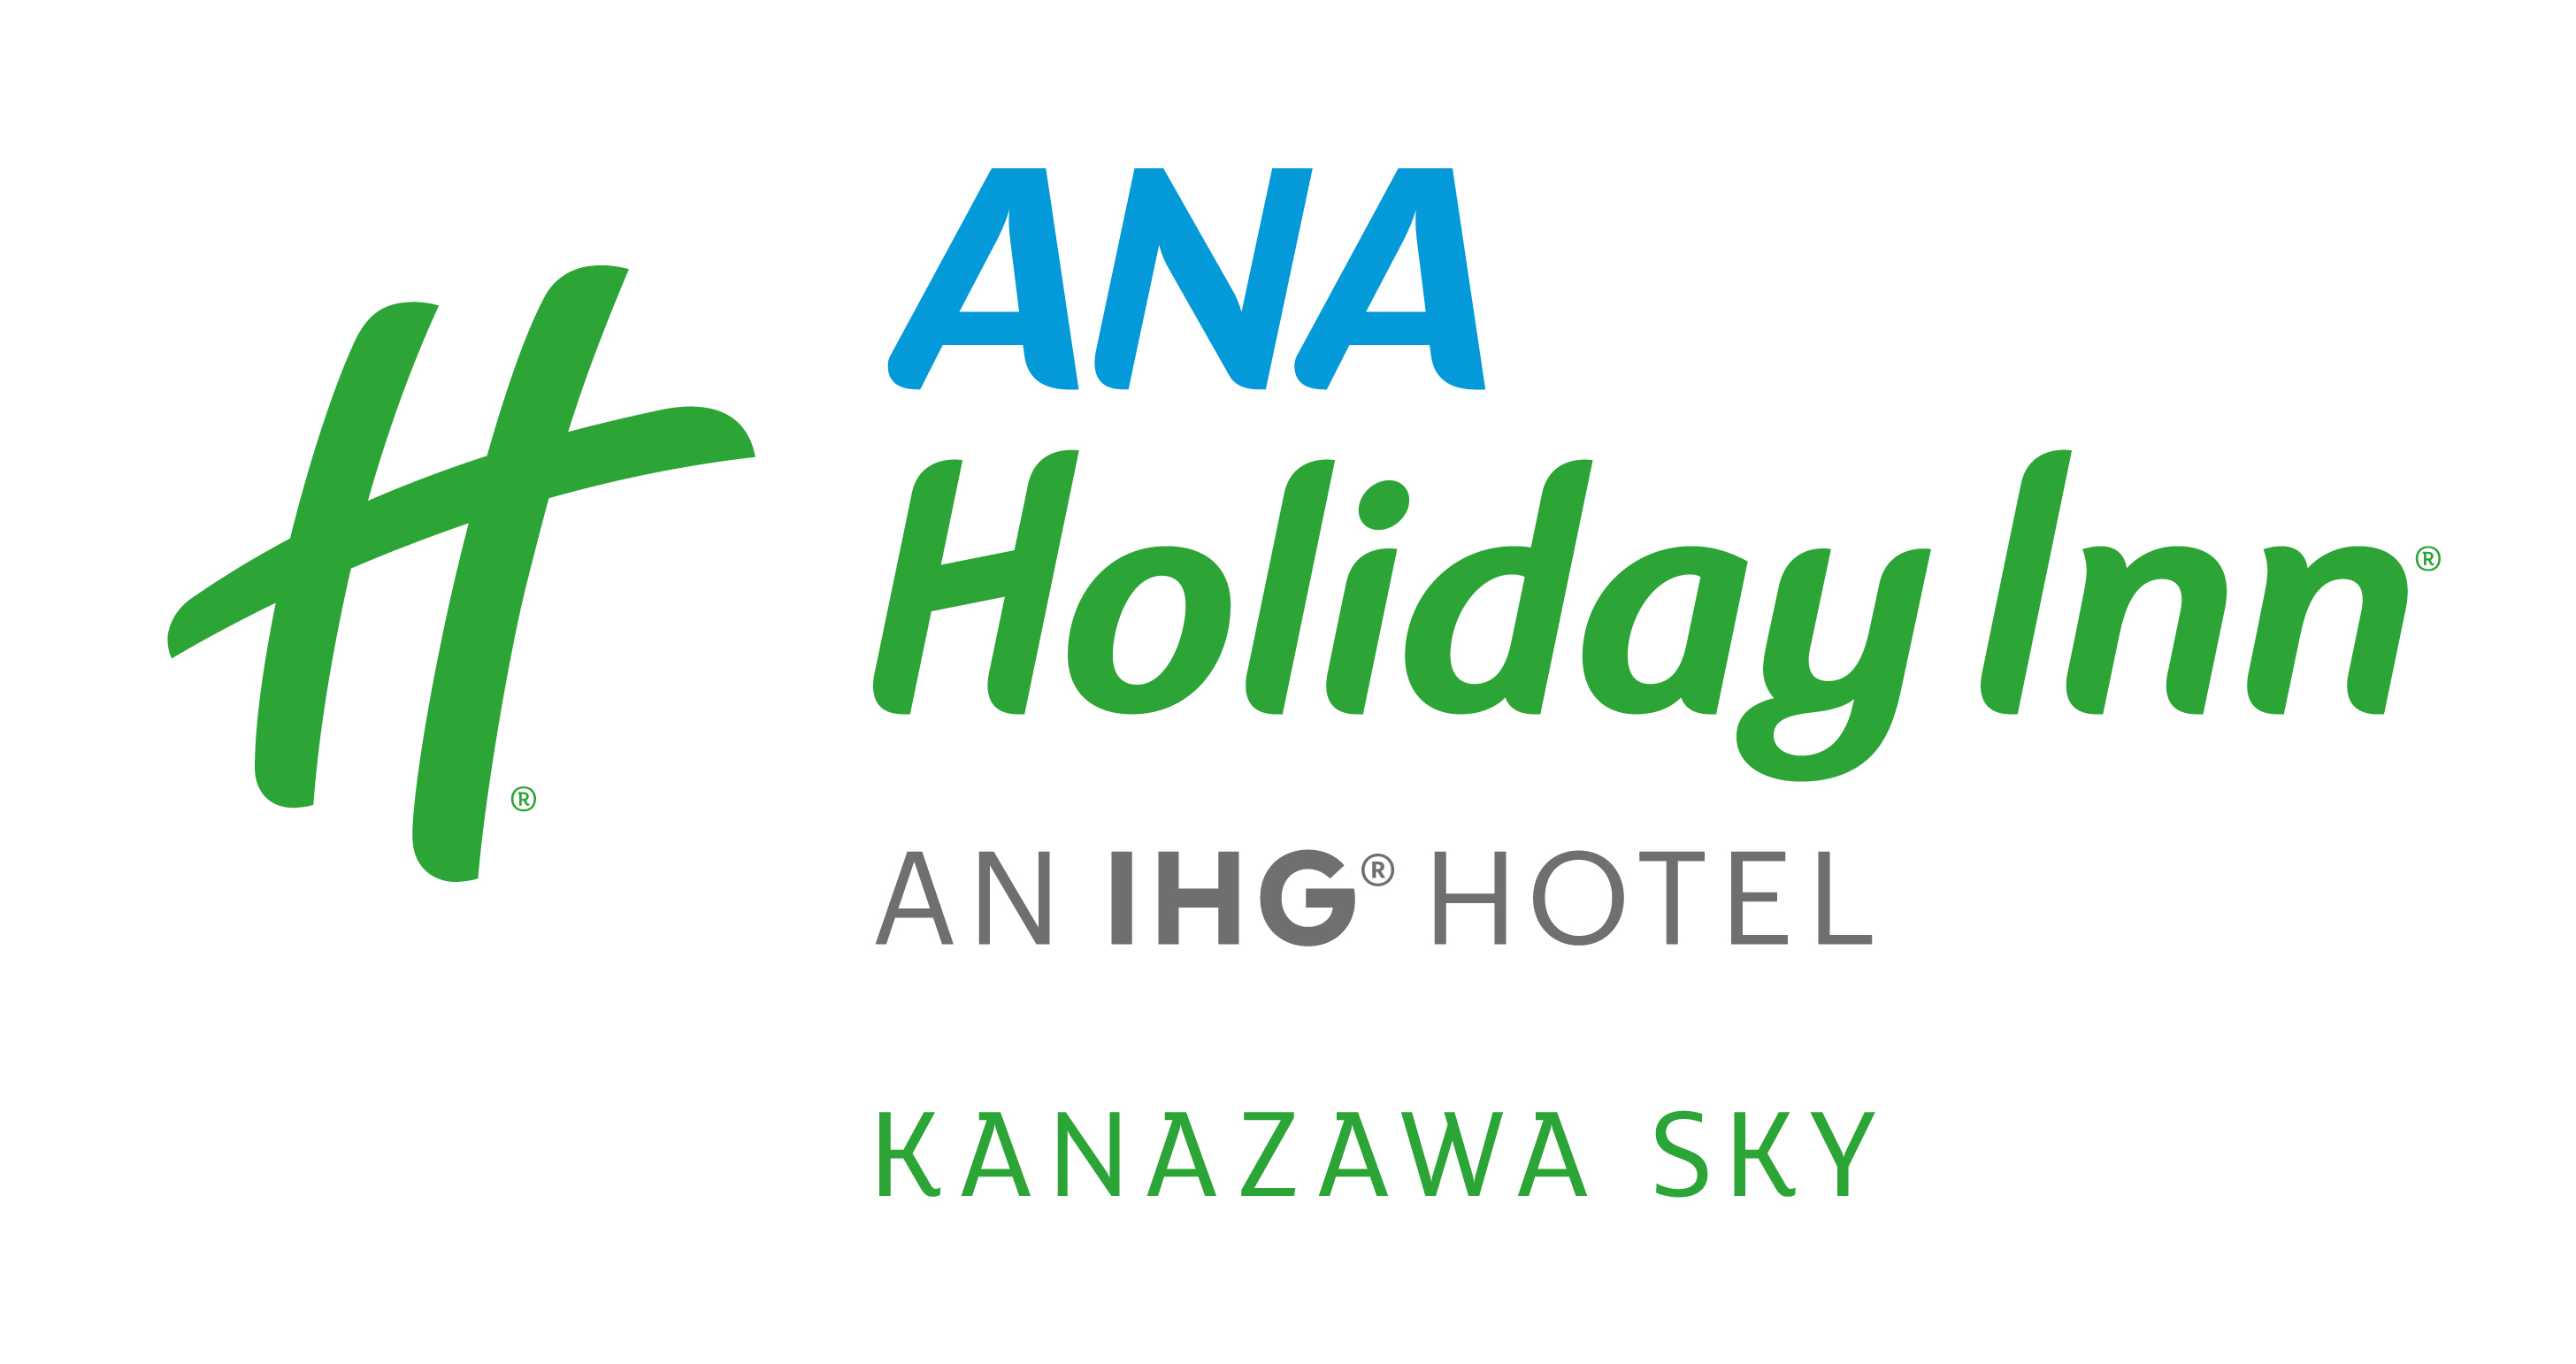 ANA Holiday Inn AN IHG HOTEL KANAZAWA SKY